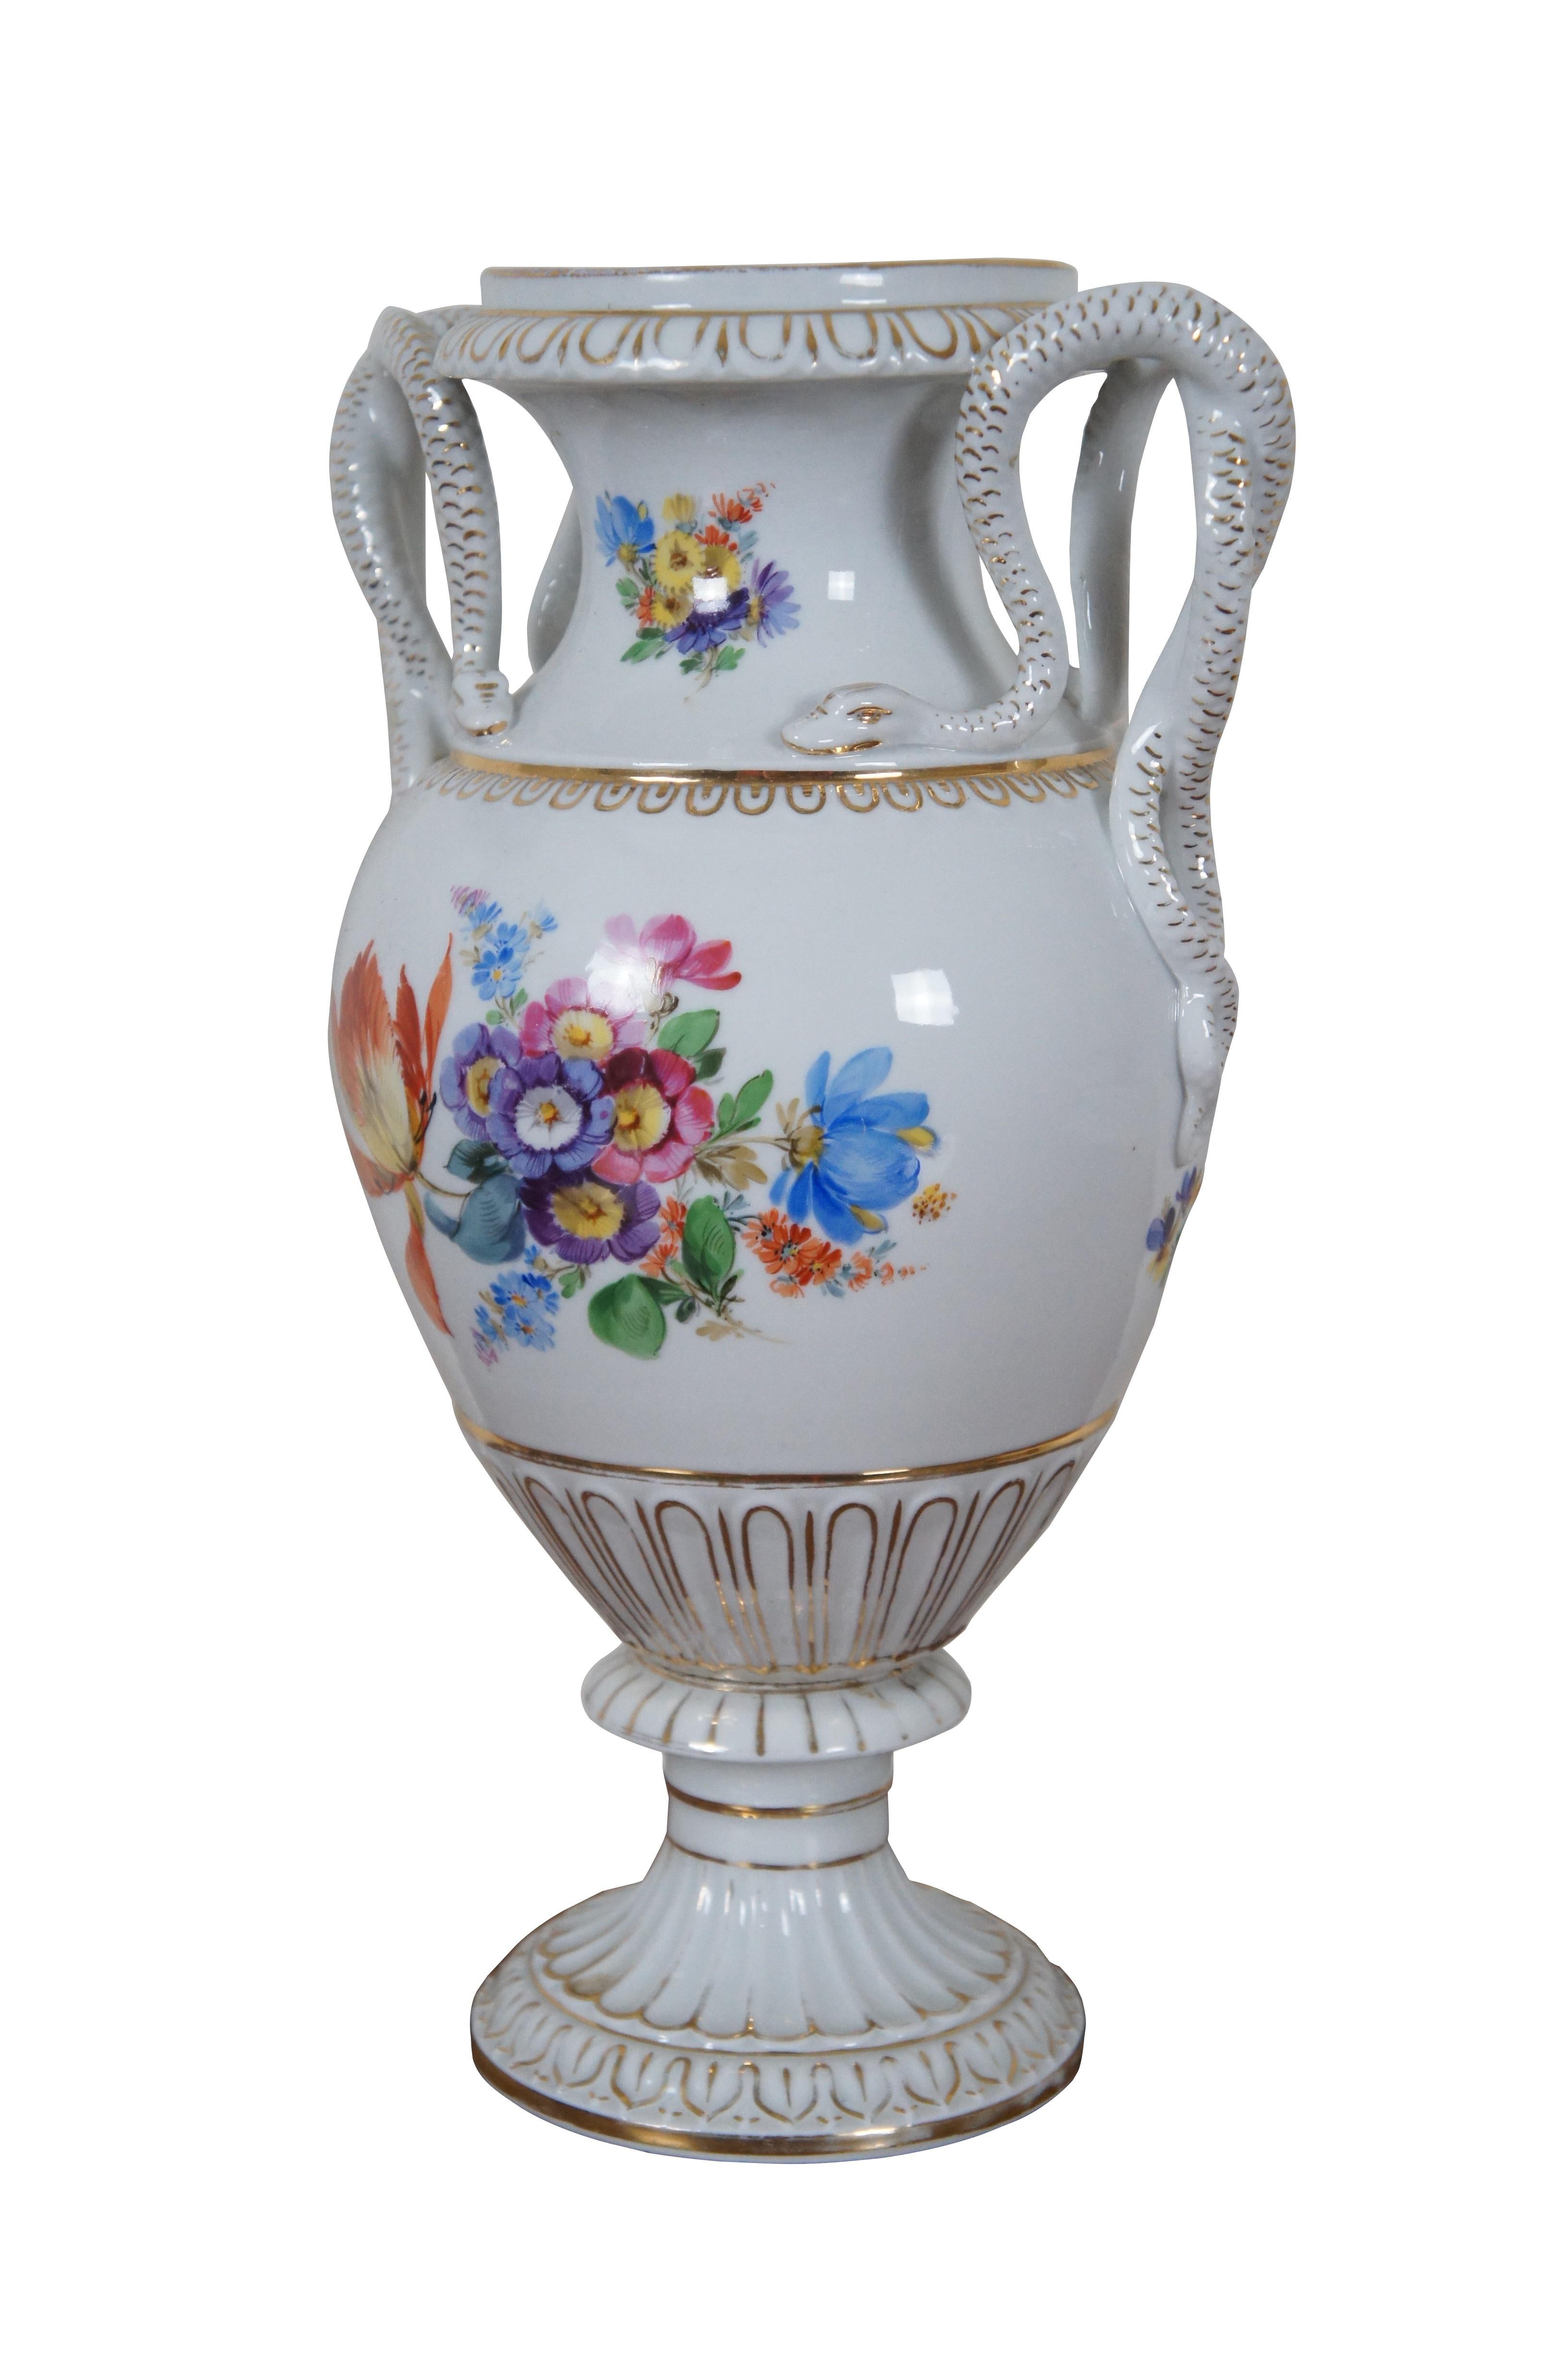 Antique German Meissen Dresden Porcelain Snake Handle Mantel Urn Vase 12